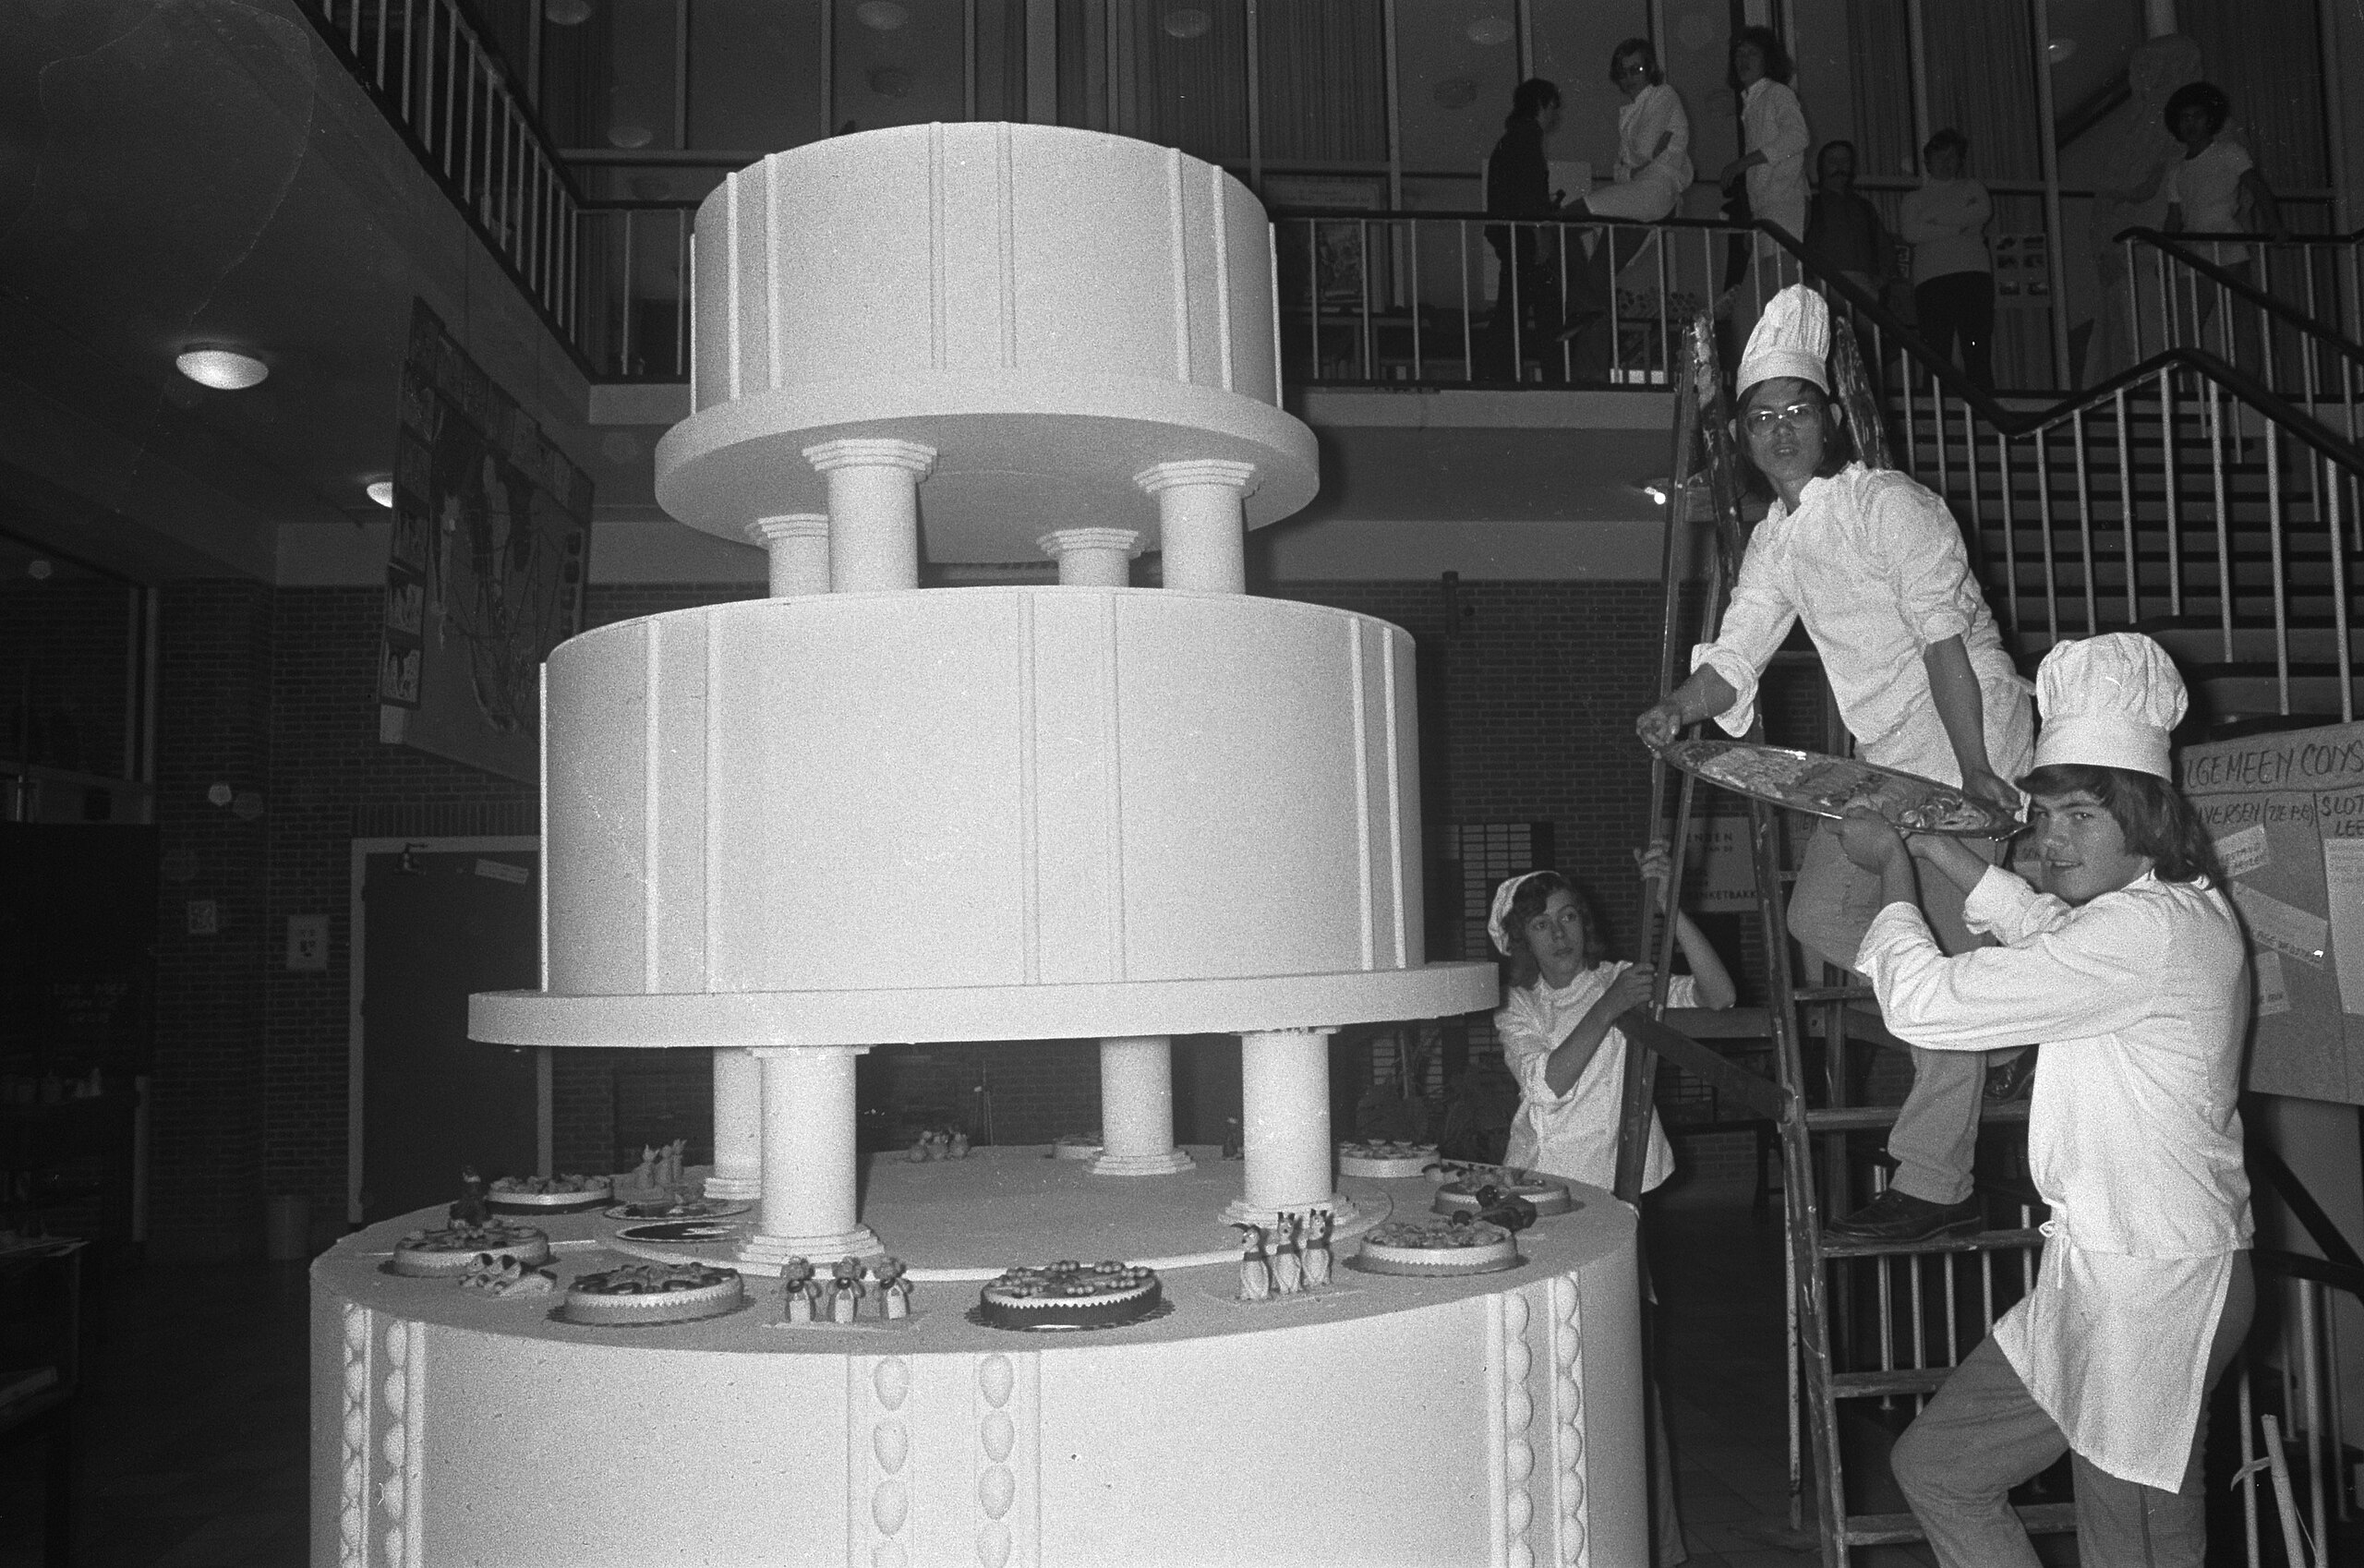 lezing roem alledaags File:Banketbakkersschool in Amsterdam bestaat 50 jaar; een vier meter hoge  taart wordt klaar gemaakt, Bestanddeelnr 927-1458.jpg - Wikimedia Commons